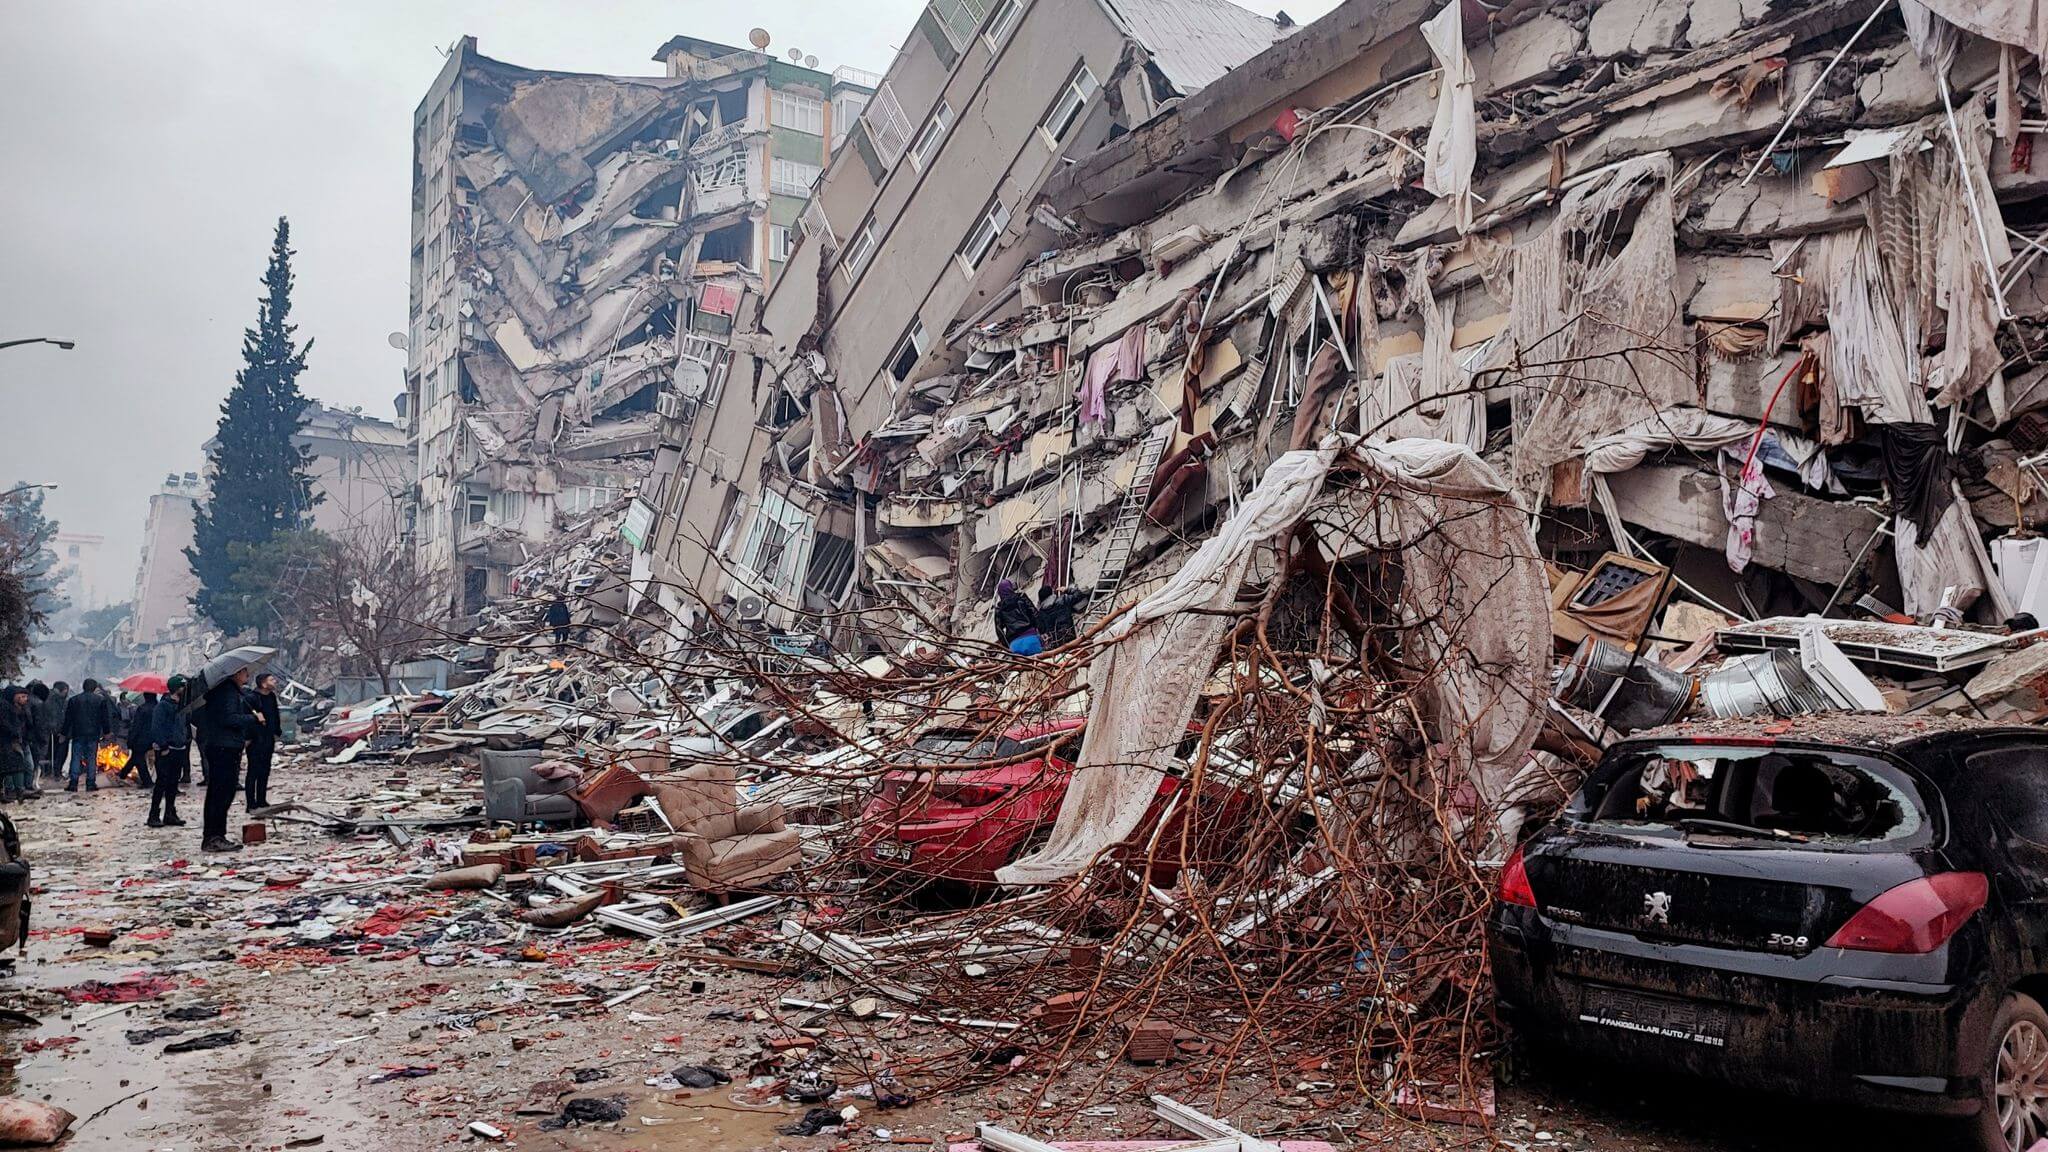 Մի շարք գրանդ ակումբներ ցավակցական ուղերձներ են հղել Թուրքիայում և Սիրիայում տեղի ունեցած երկրաշարժի կապակցությամբ